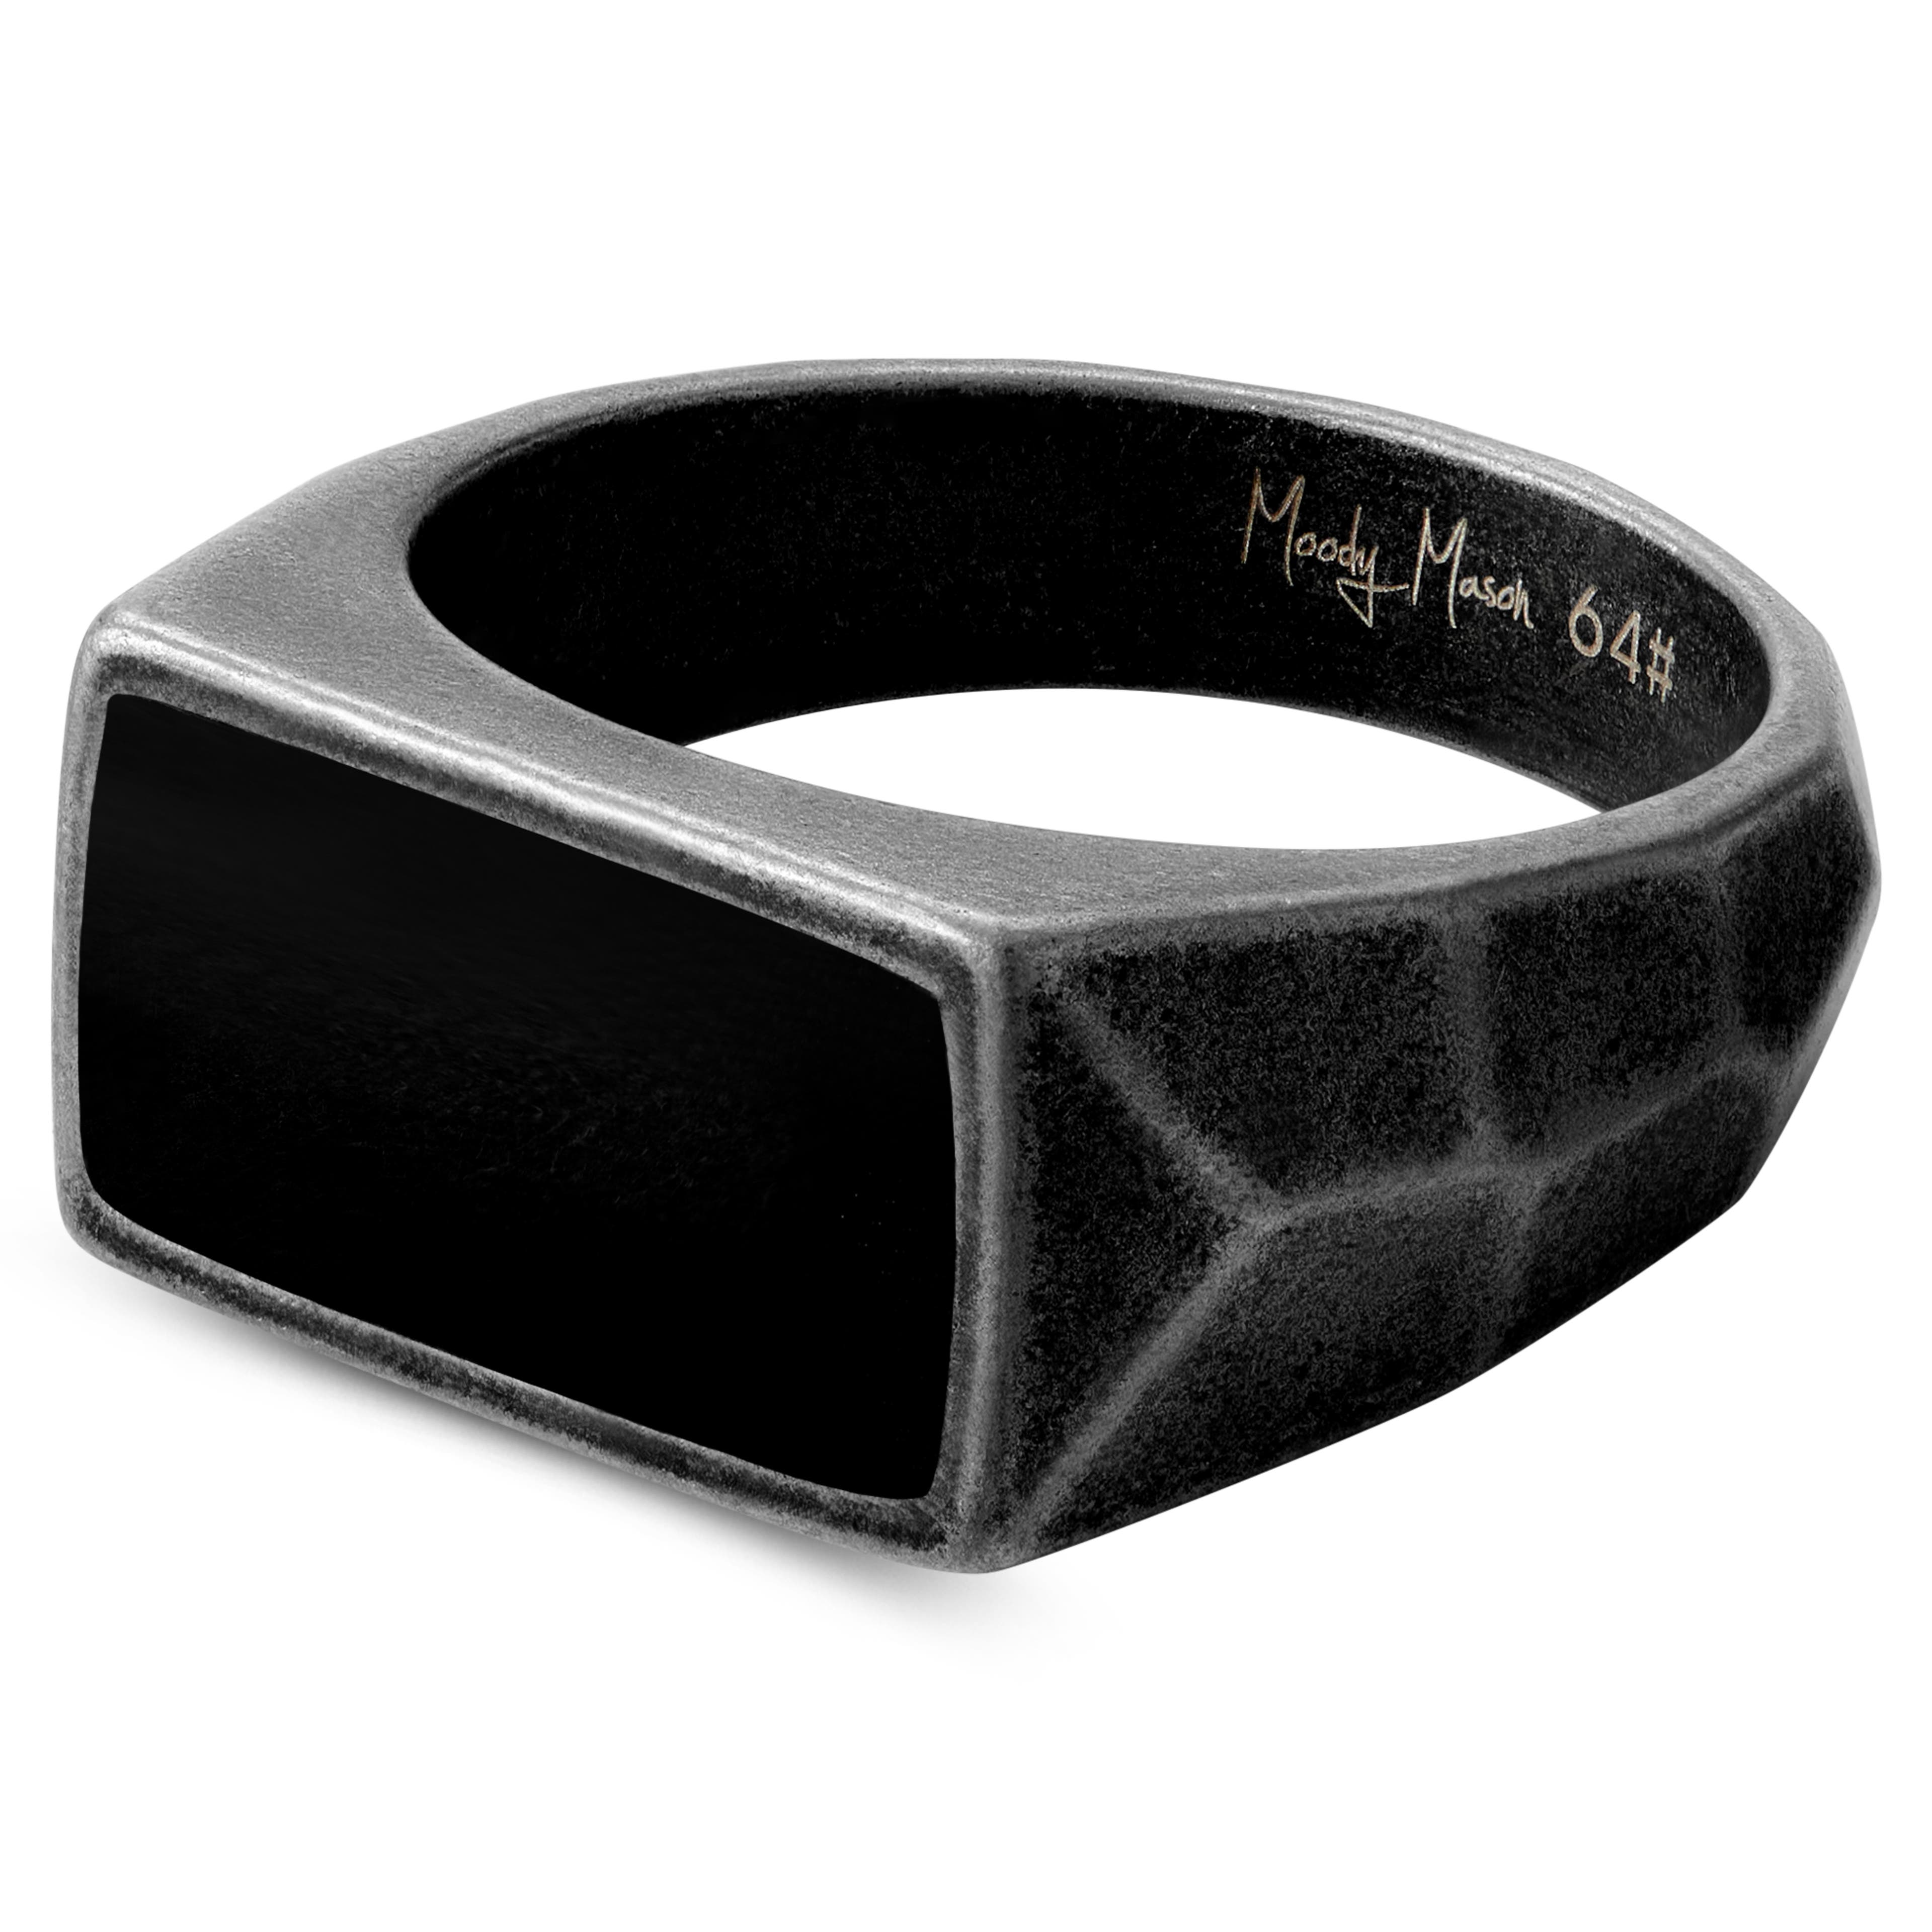 Jax pečetní prsten z oceli v černé a šedé barvě